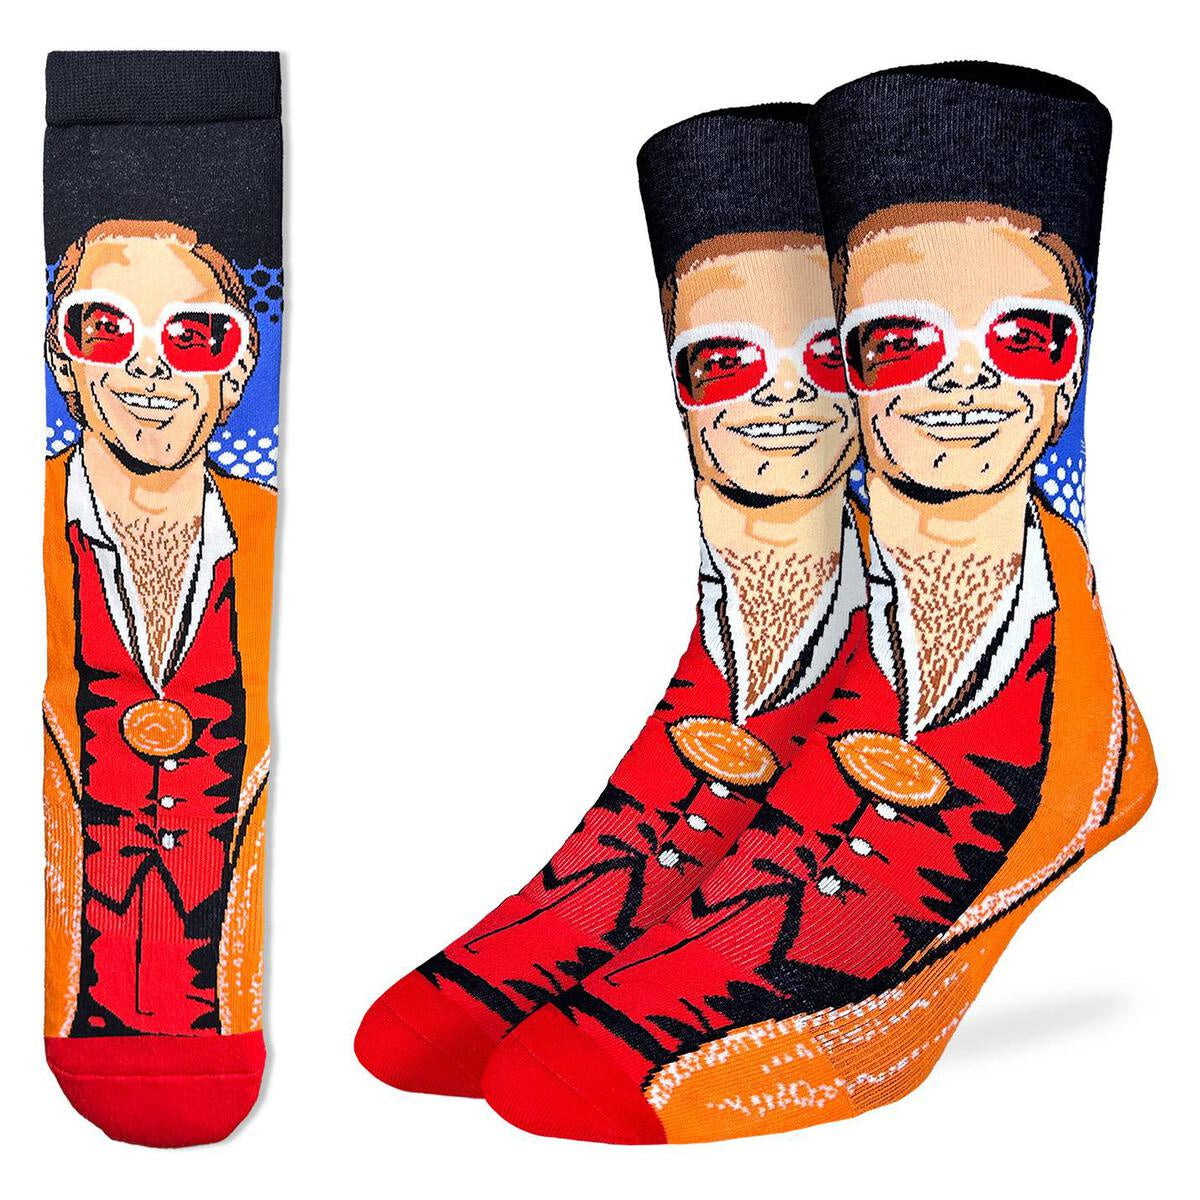 Elton John Medallion Socks (Size 8-13)